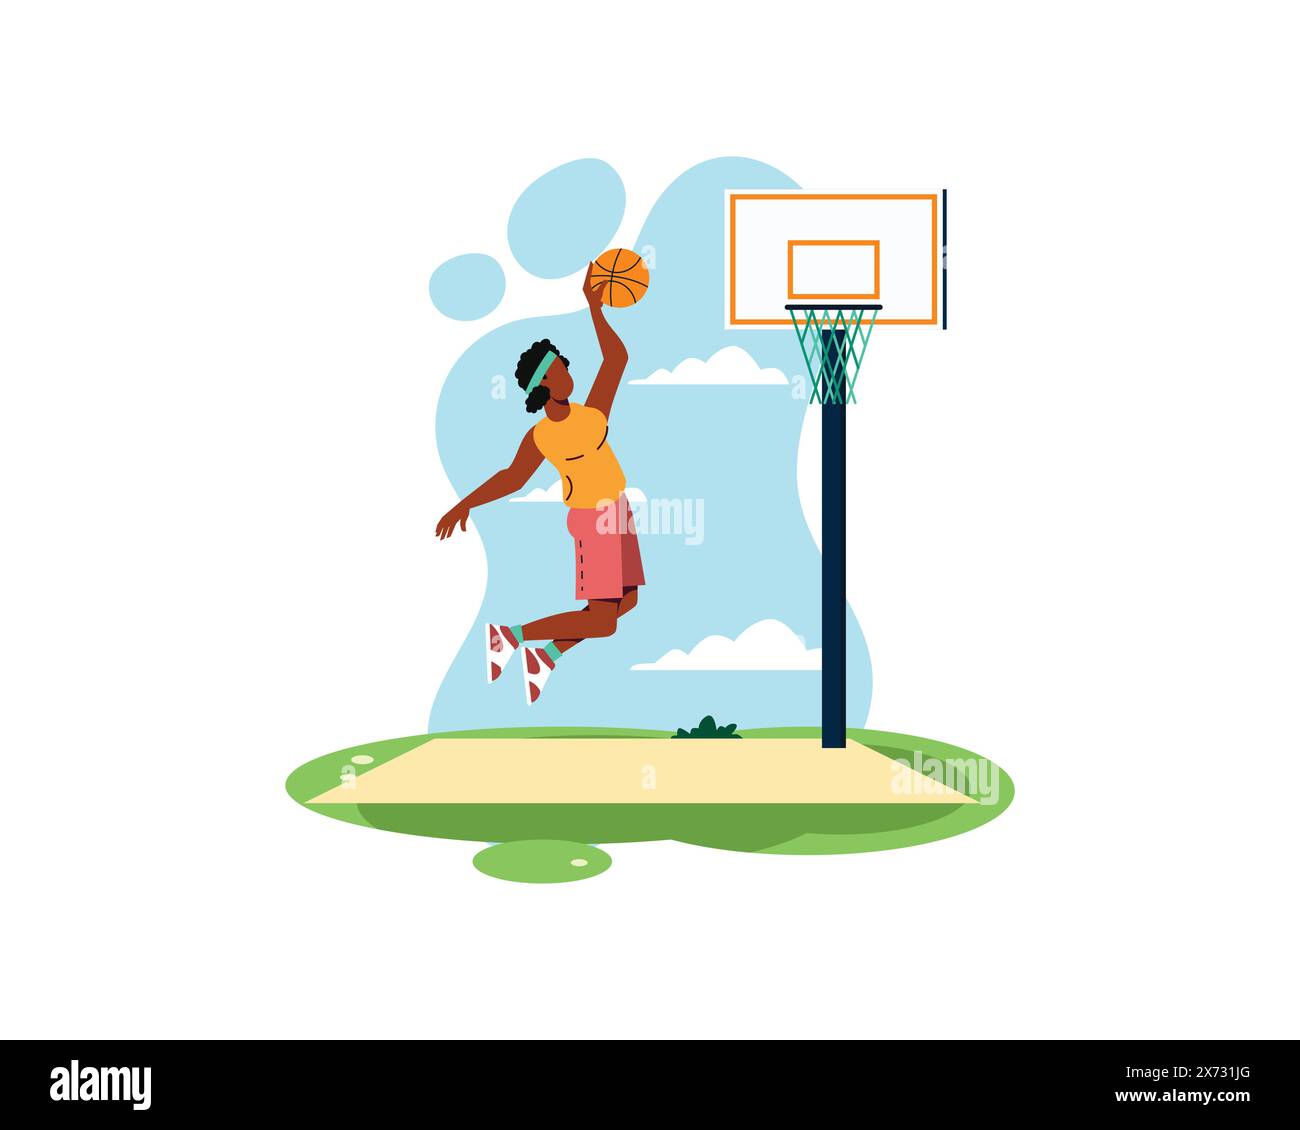 La giocatrice di basket fa schifo la palla mentre salta in alto. concetto di sport e ricreazione. Illustrazione di uno stile di vita sano in un design flatstyle Illustrazione Vettoriale